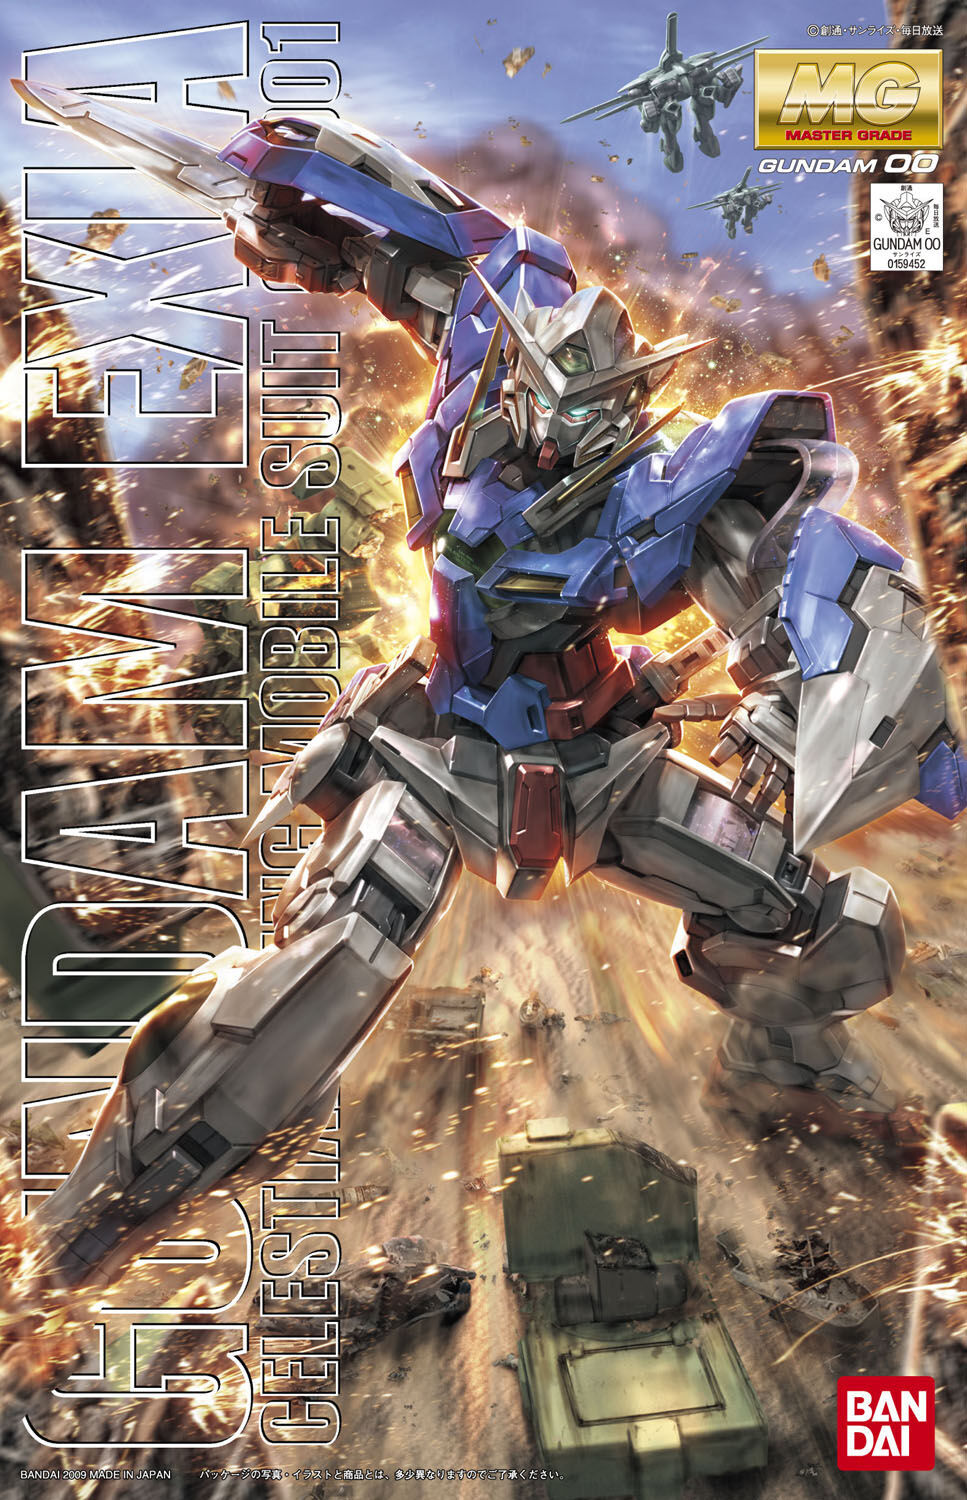 Bandai 5061586 1/100 MG Gundam EXIA - Hobbytech Toys